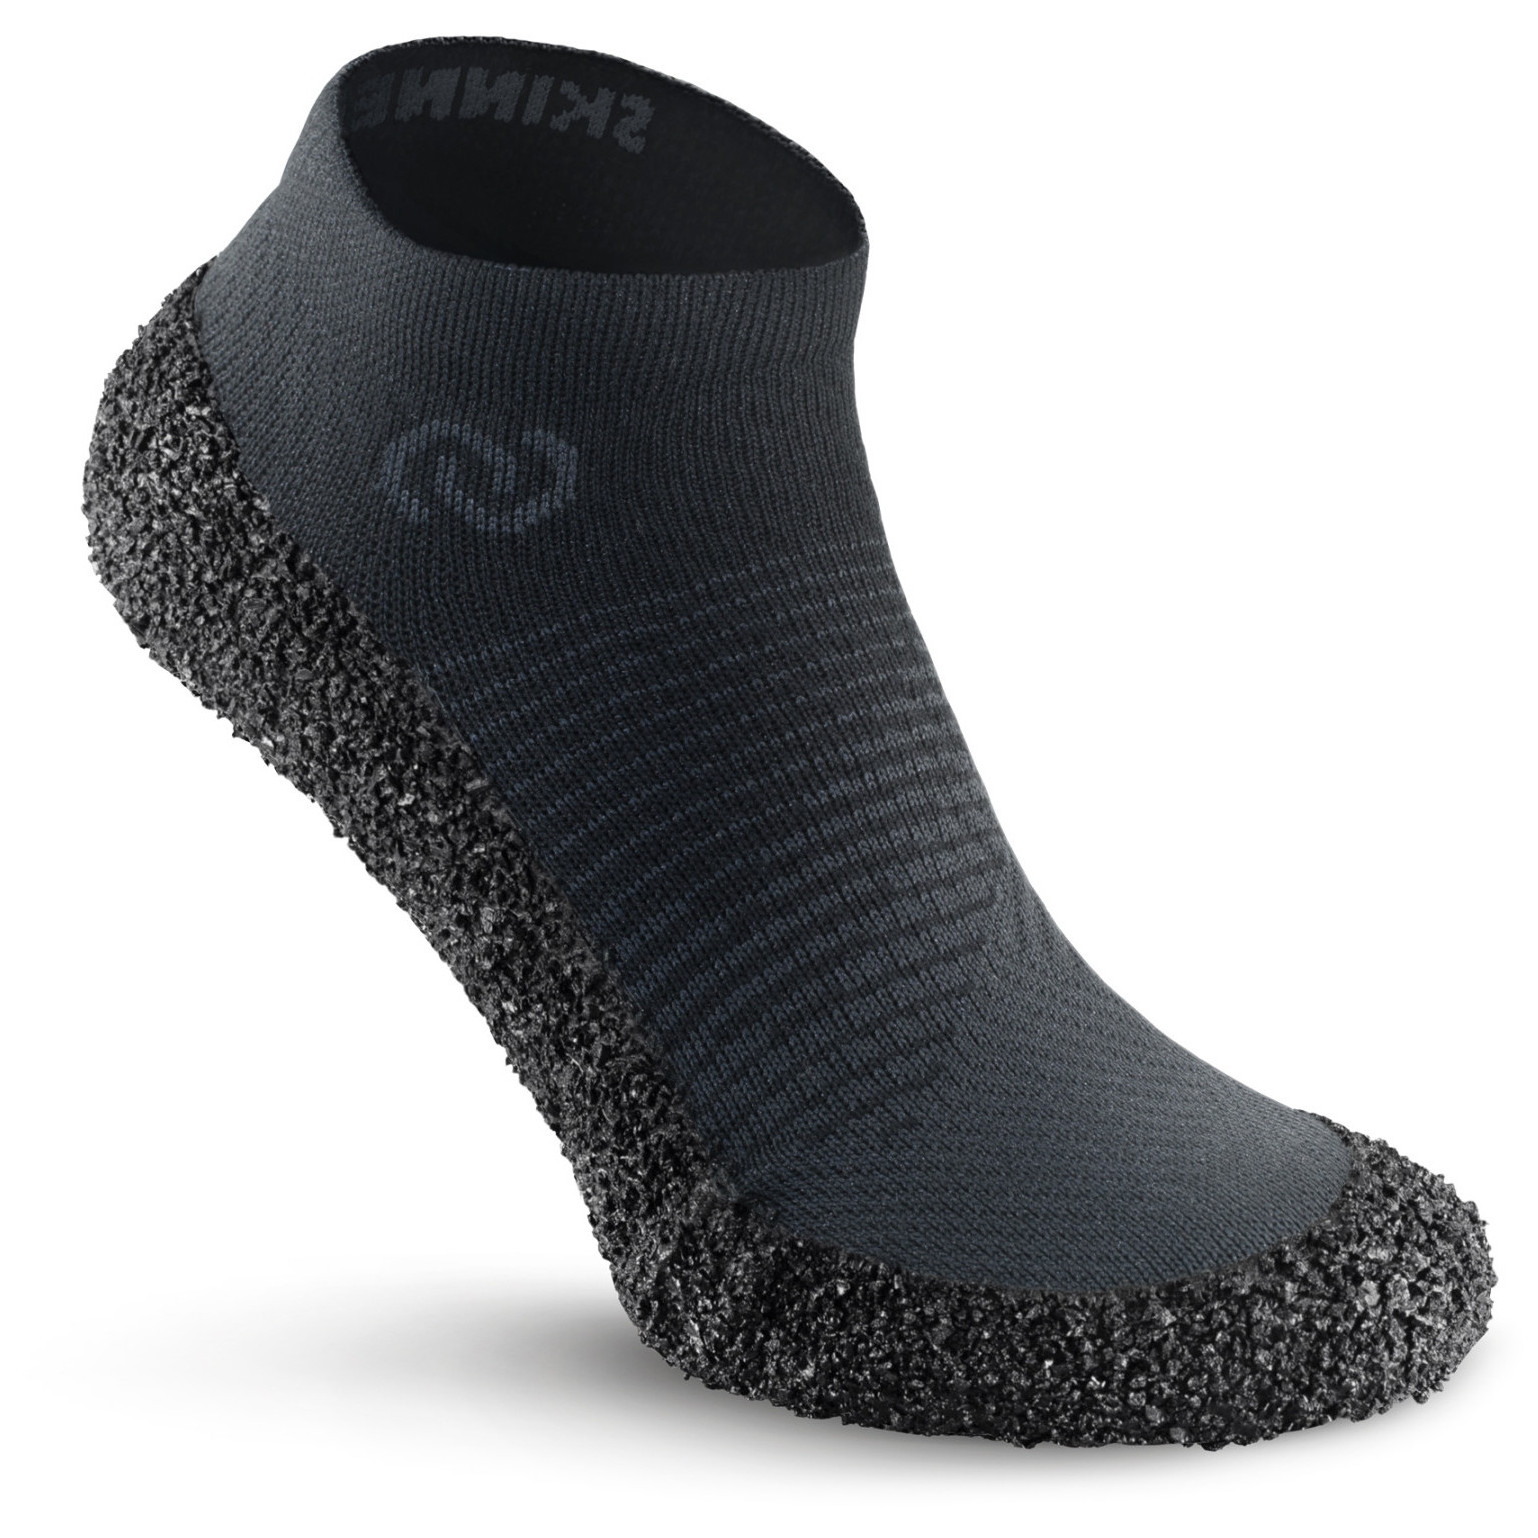 Ponožkoboty Skinners 2.0 Velikost ponožek: 43-44 / Barva: šedá